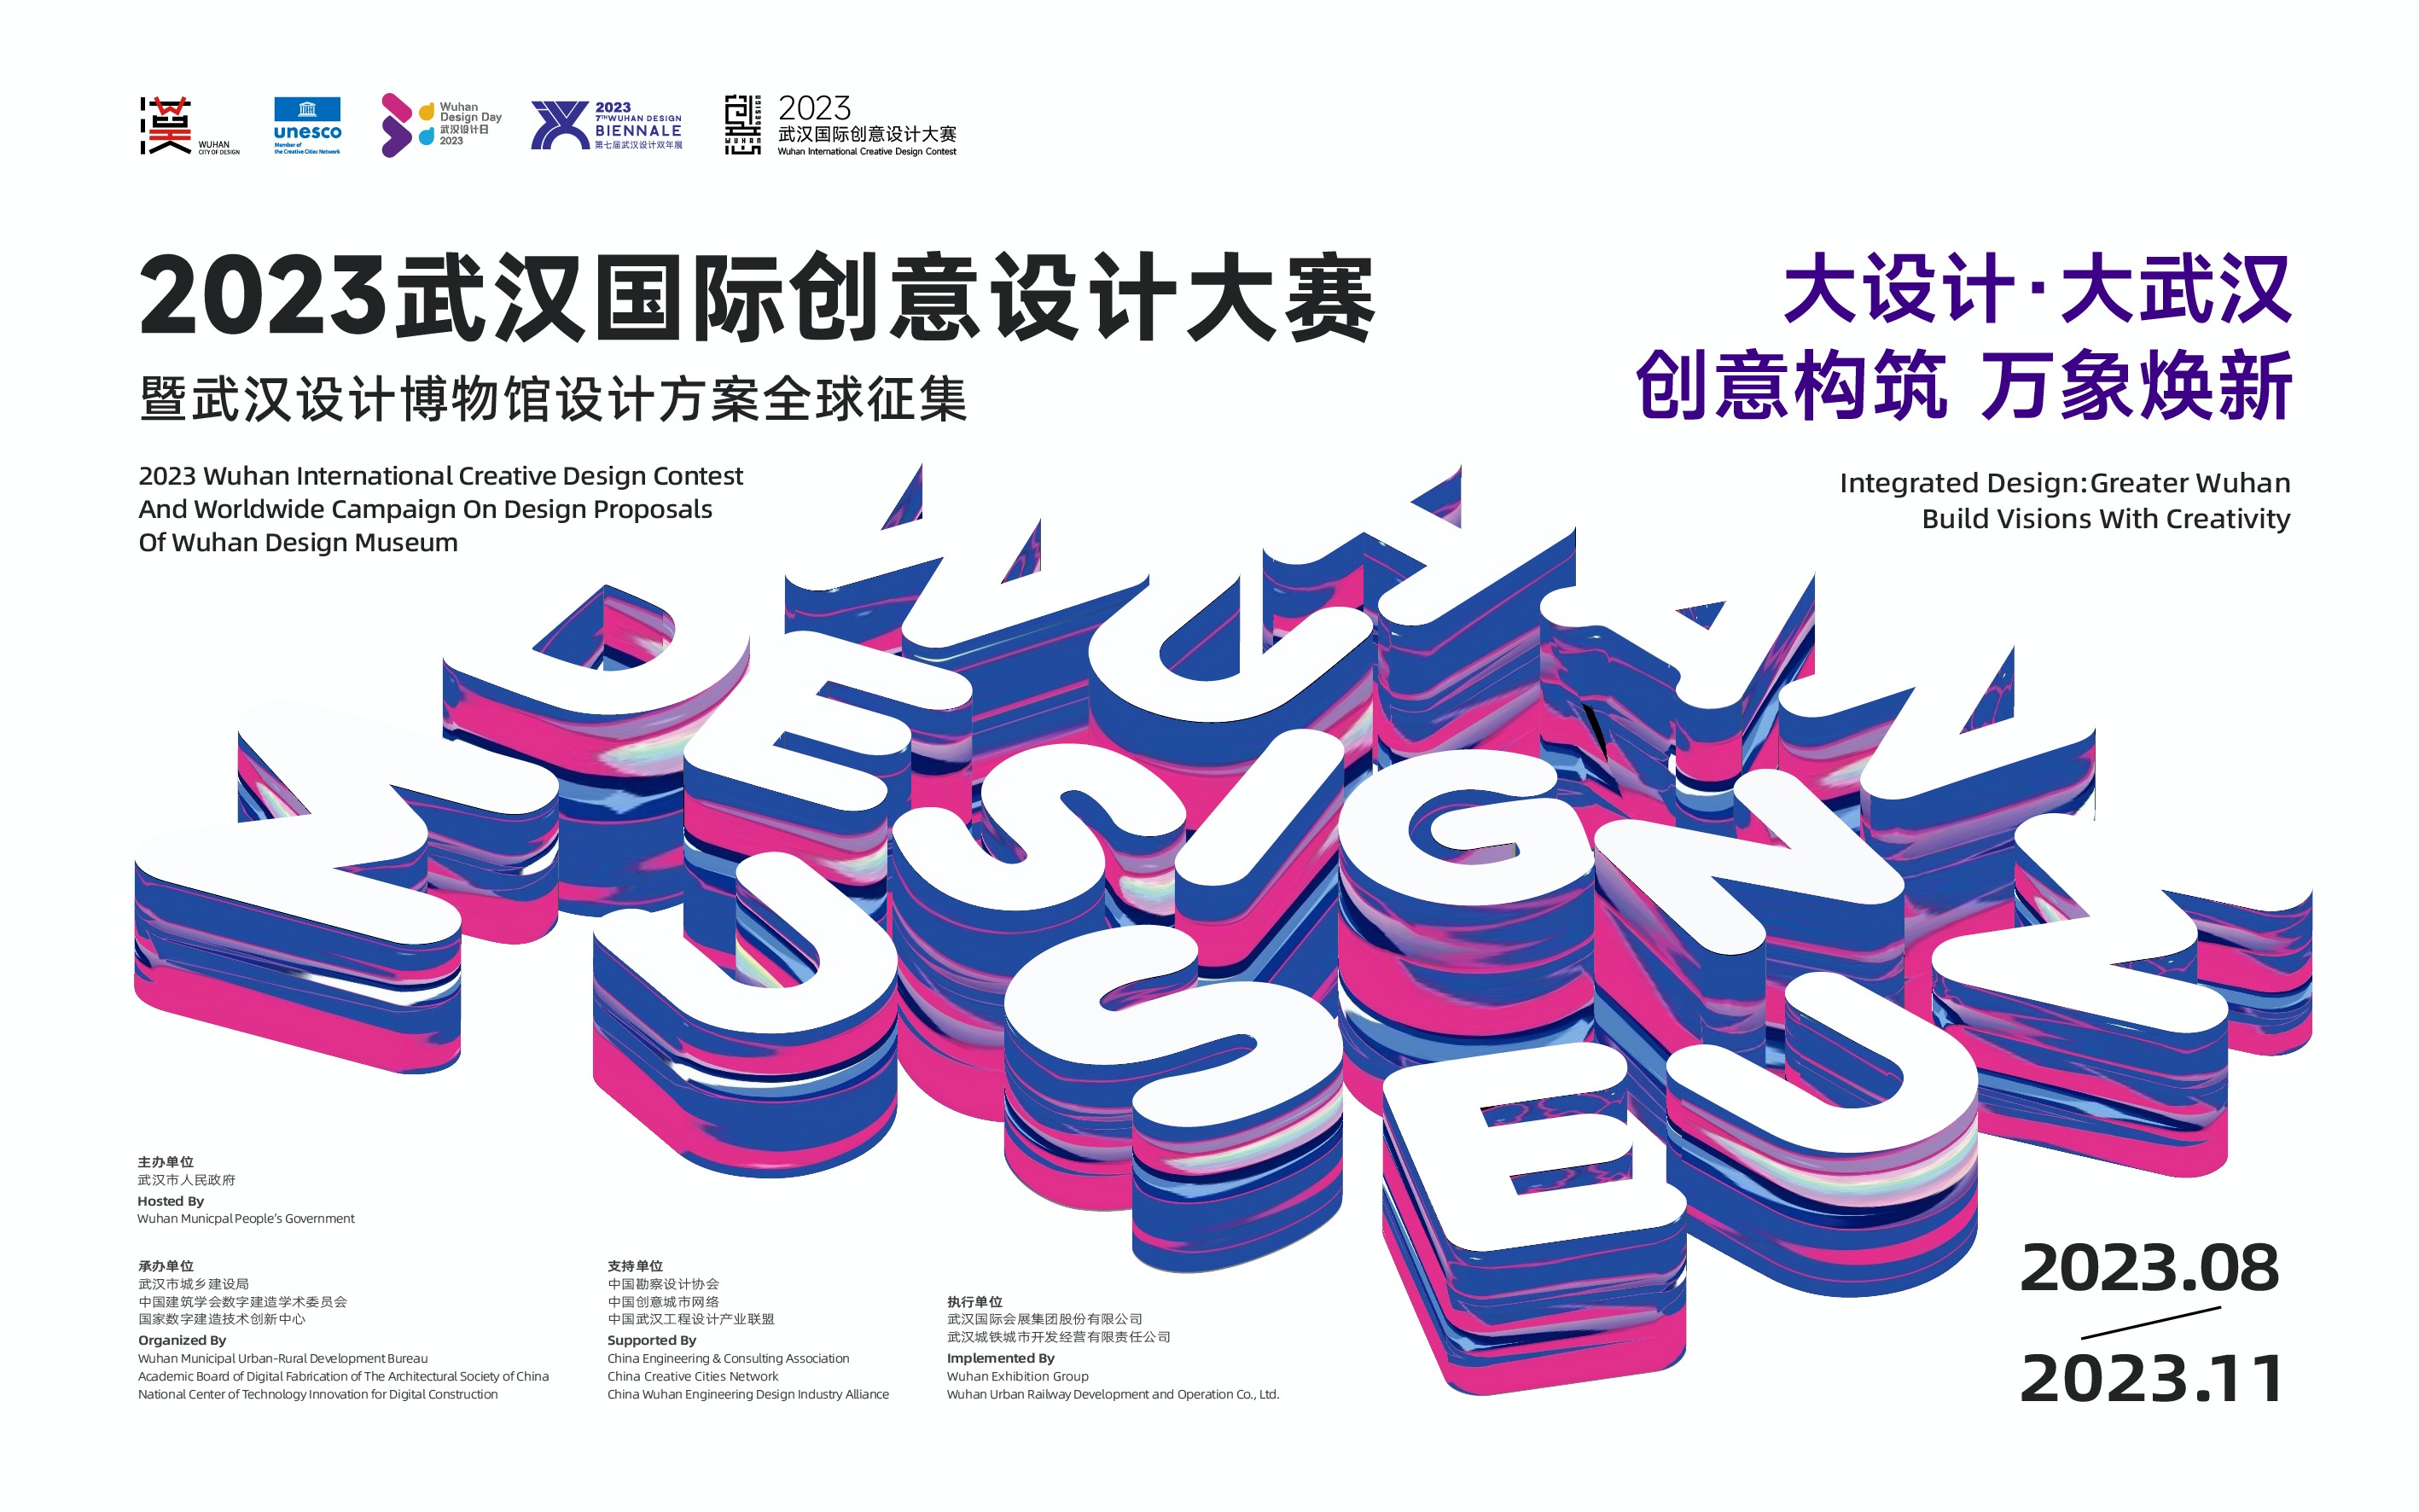 2023年武汉国际创意设计大赛 全球征集正在进